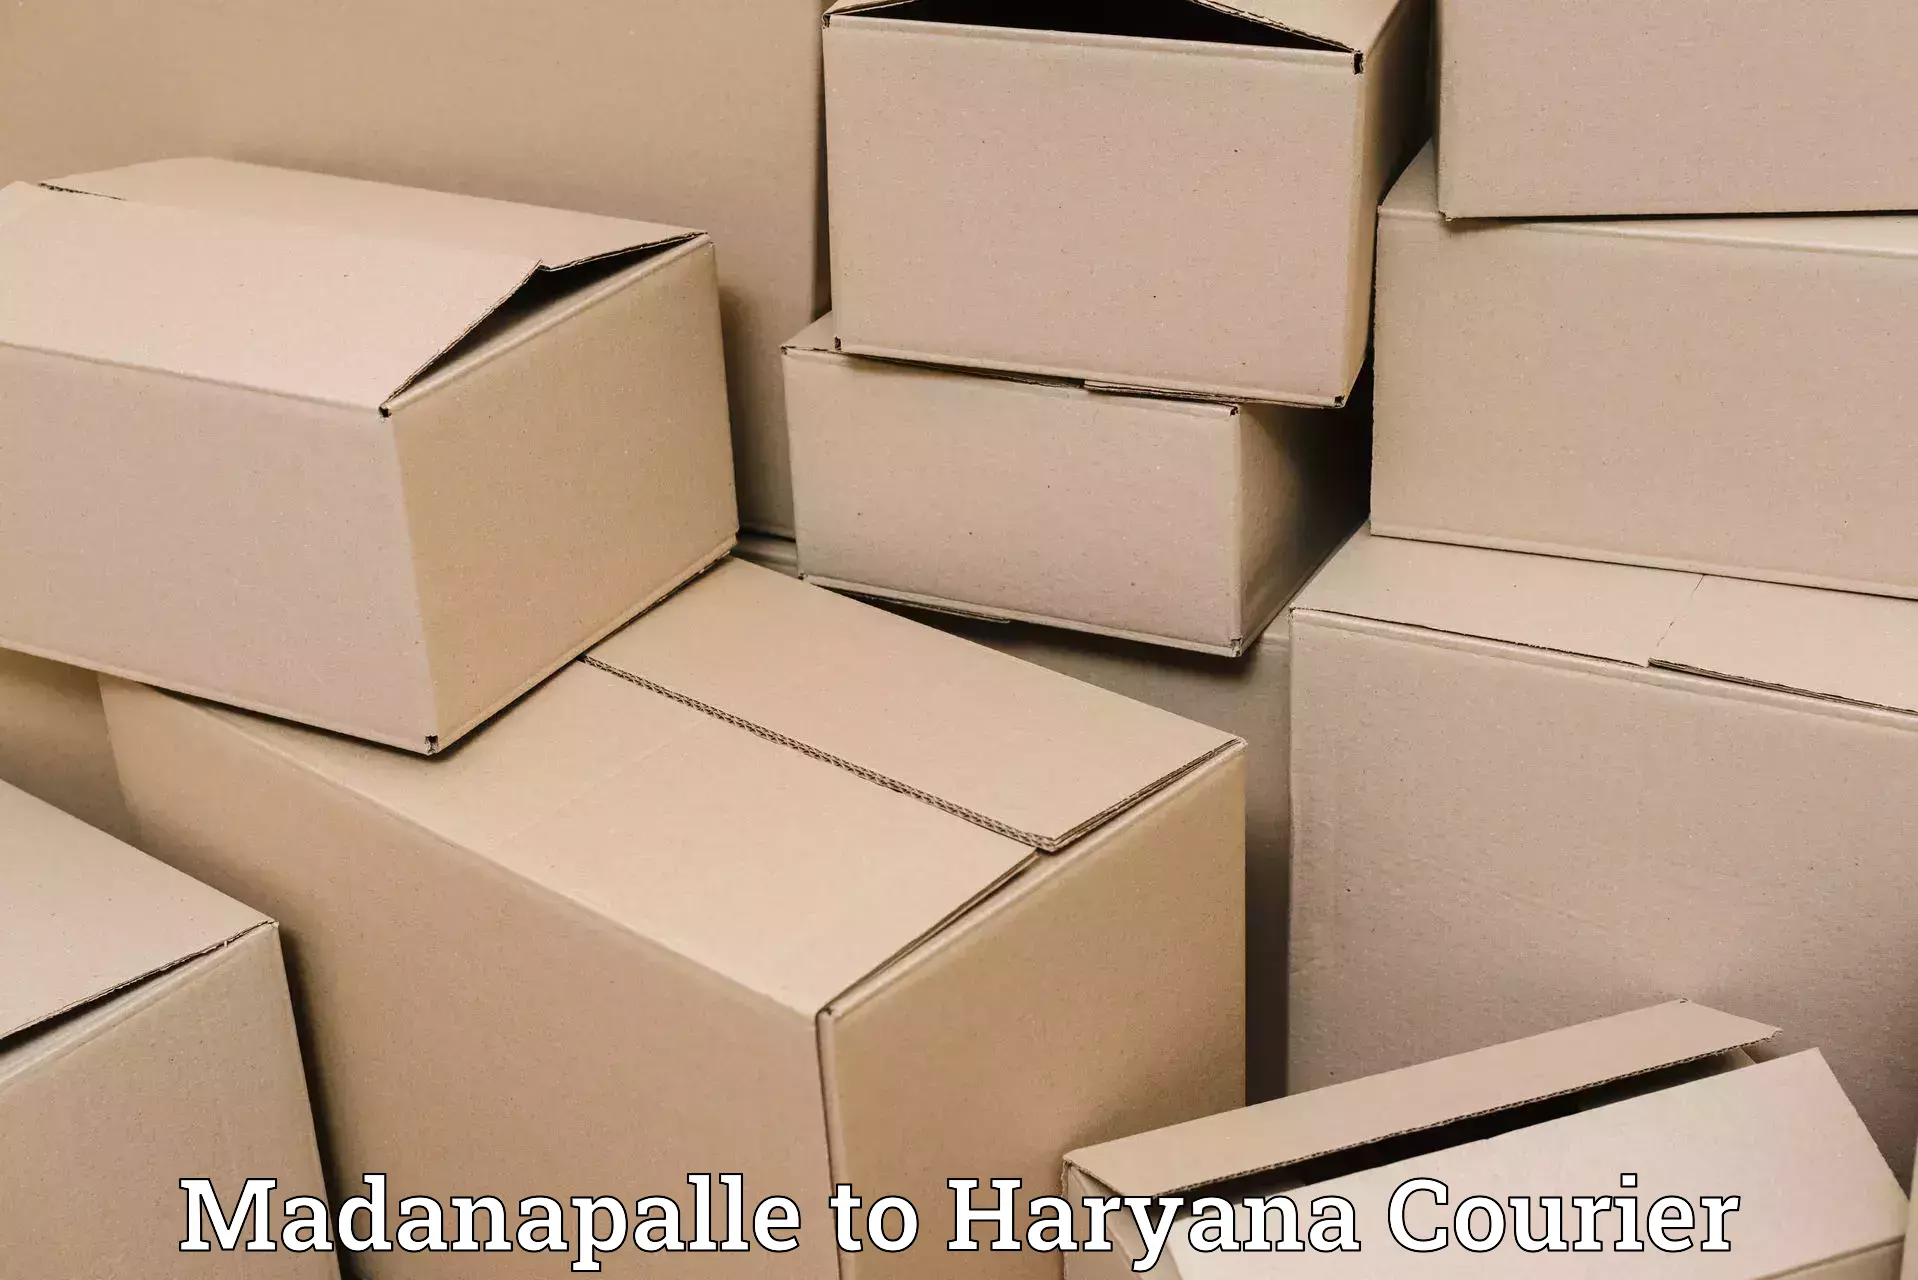 Efficient parcel transport Madanapalle to Pataudi